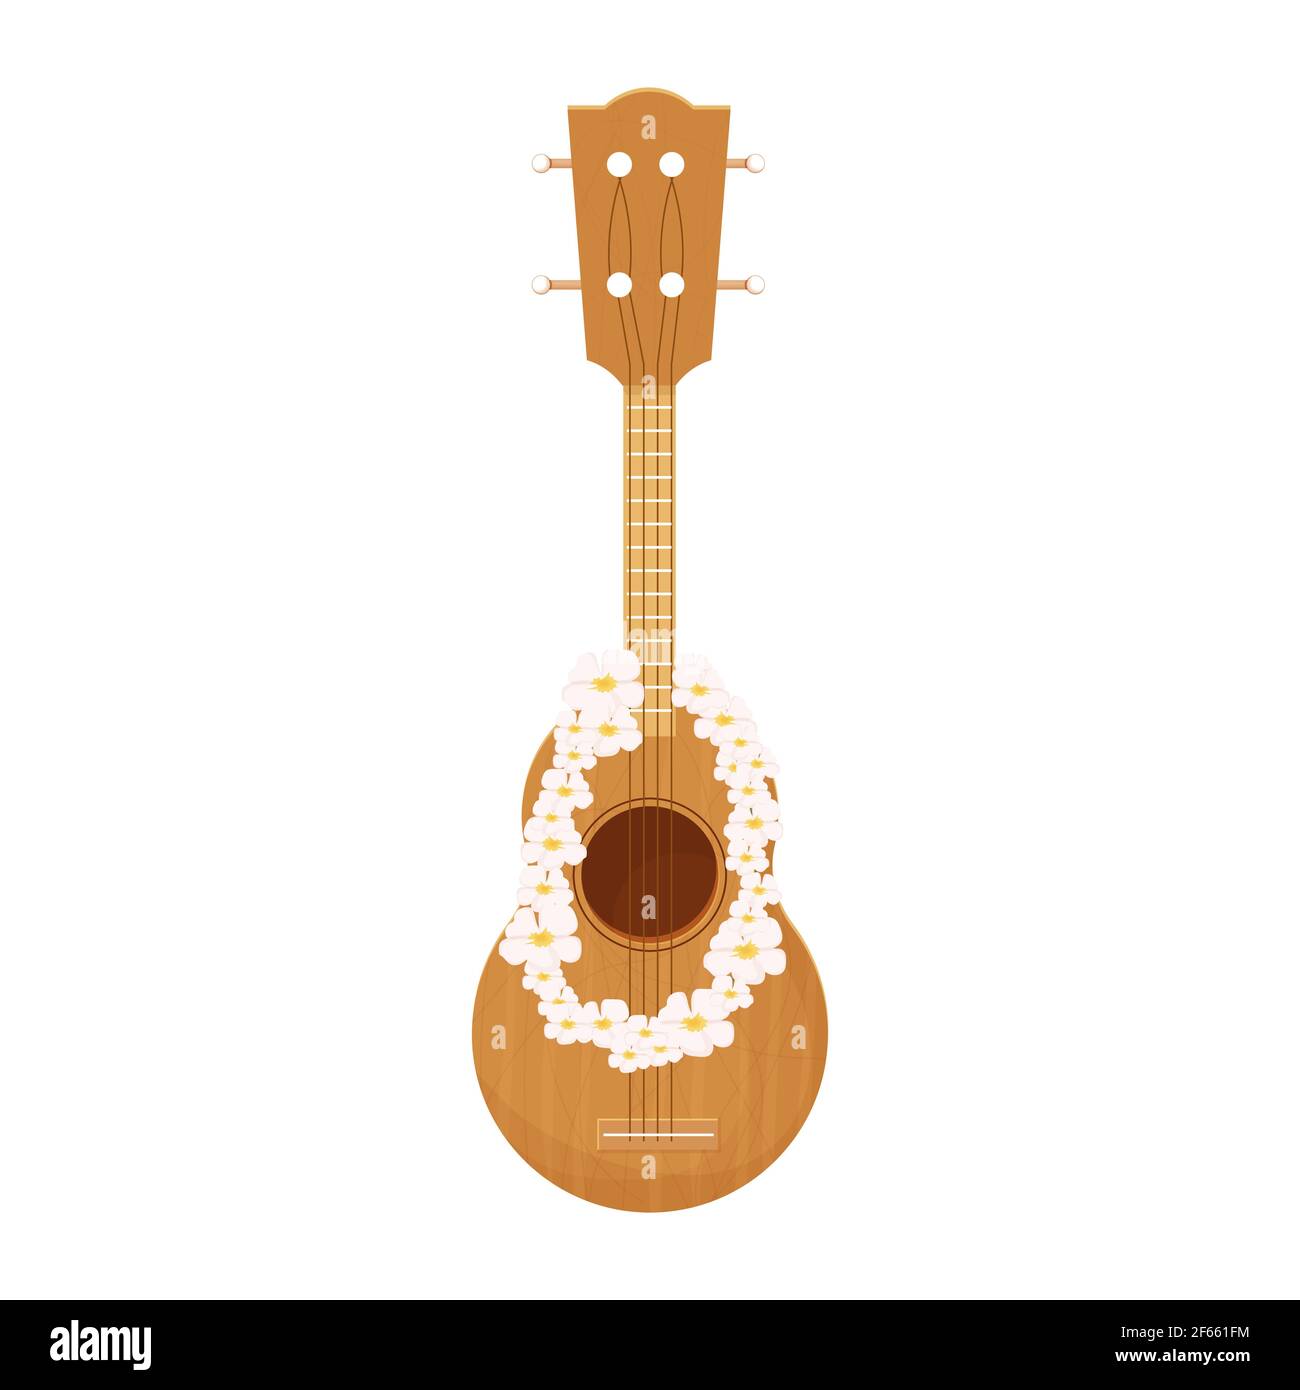 Chitarra acustica folk ukulele in stile cartone animato da legno con fiori tropicali isolati su sfondo bianco. Strumento musicale hawaiano tradizionale, oggetto dettagliato e testurizzato. Illustrazione vettoriale di stock. Illustrazione vettoriale Illustrazione Vettoriale